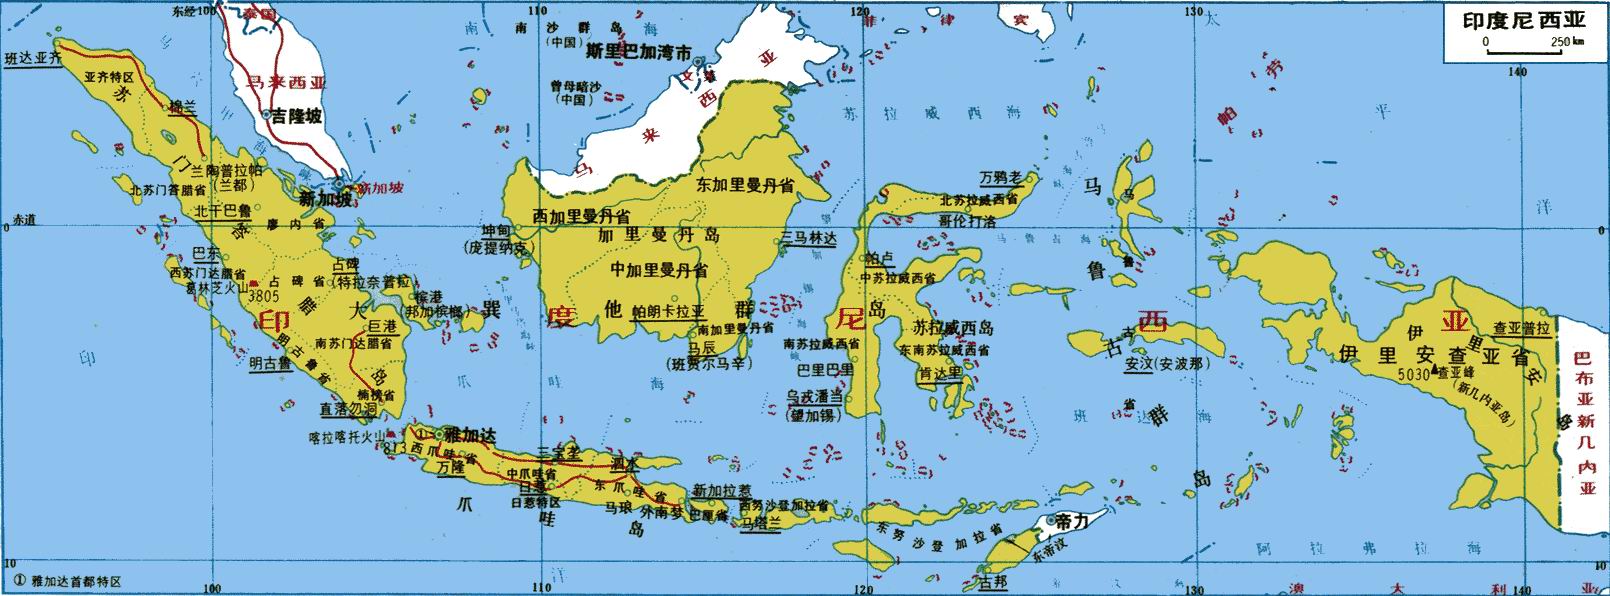 9·26印度尼西亞阿魯群島地震